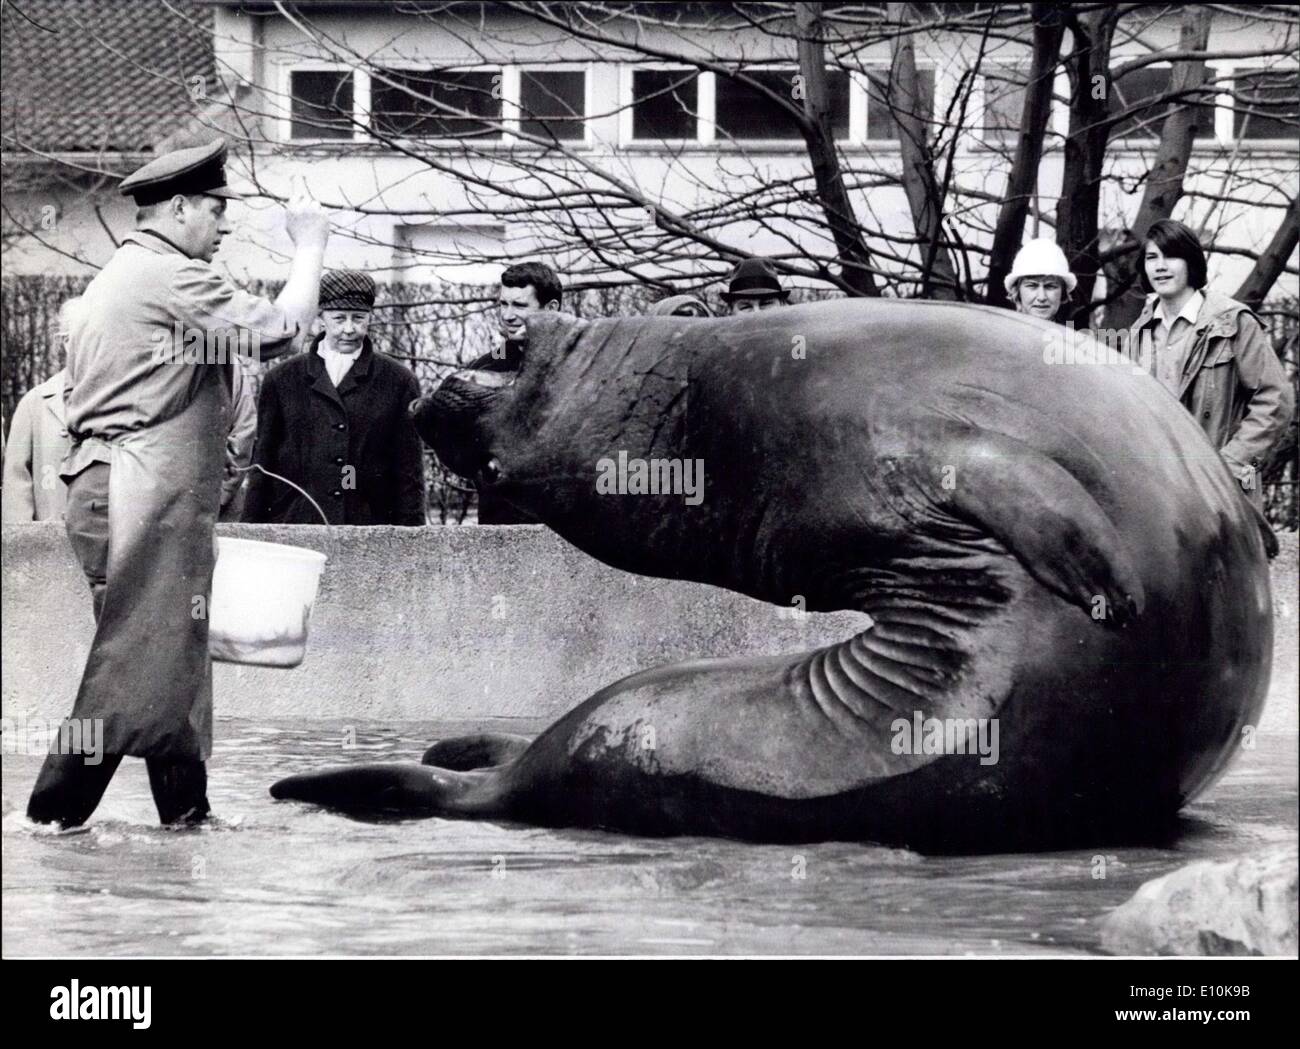 29. März 1973 - Sea - Elefant Roland, Star des Berliner Zoos: Roland, schwere See-Elefanten des Berliner Zoos ist dabei ein ganz Wert - wile Job. Er verdient nicht nur Applaus des Publikums für seine '' Show'', aber auch kleine Fische, die sind natürlich viel interessanter für ihn. Darüber hinaus lassen diese gymnastischen Übungen alle Frühling Schwäche verschwinden. Sein Tipp für alle: gefällt es mir, jeden Tag 50 Mal und Sie fühlen sich Fit! Stockfoto